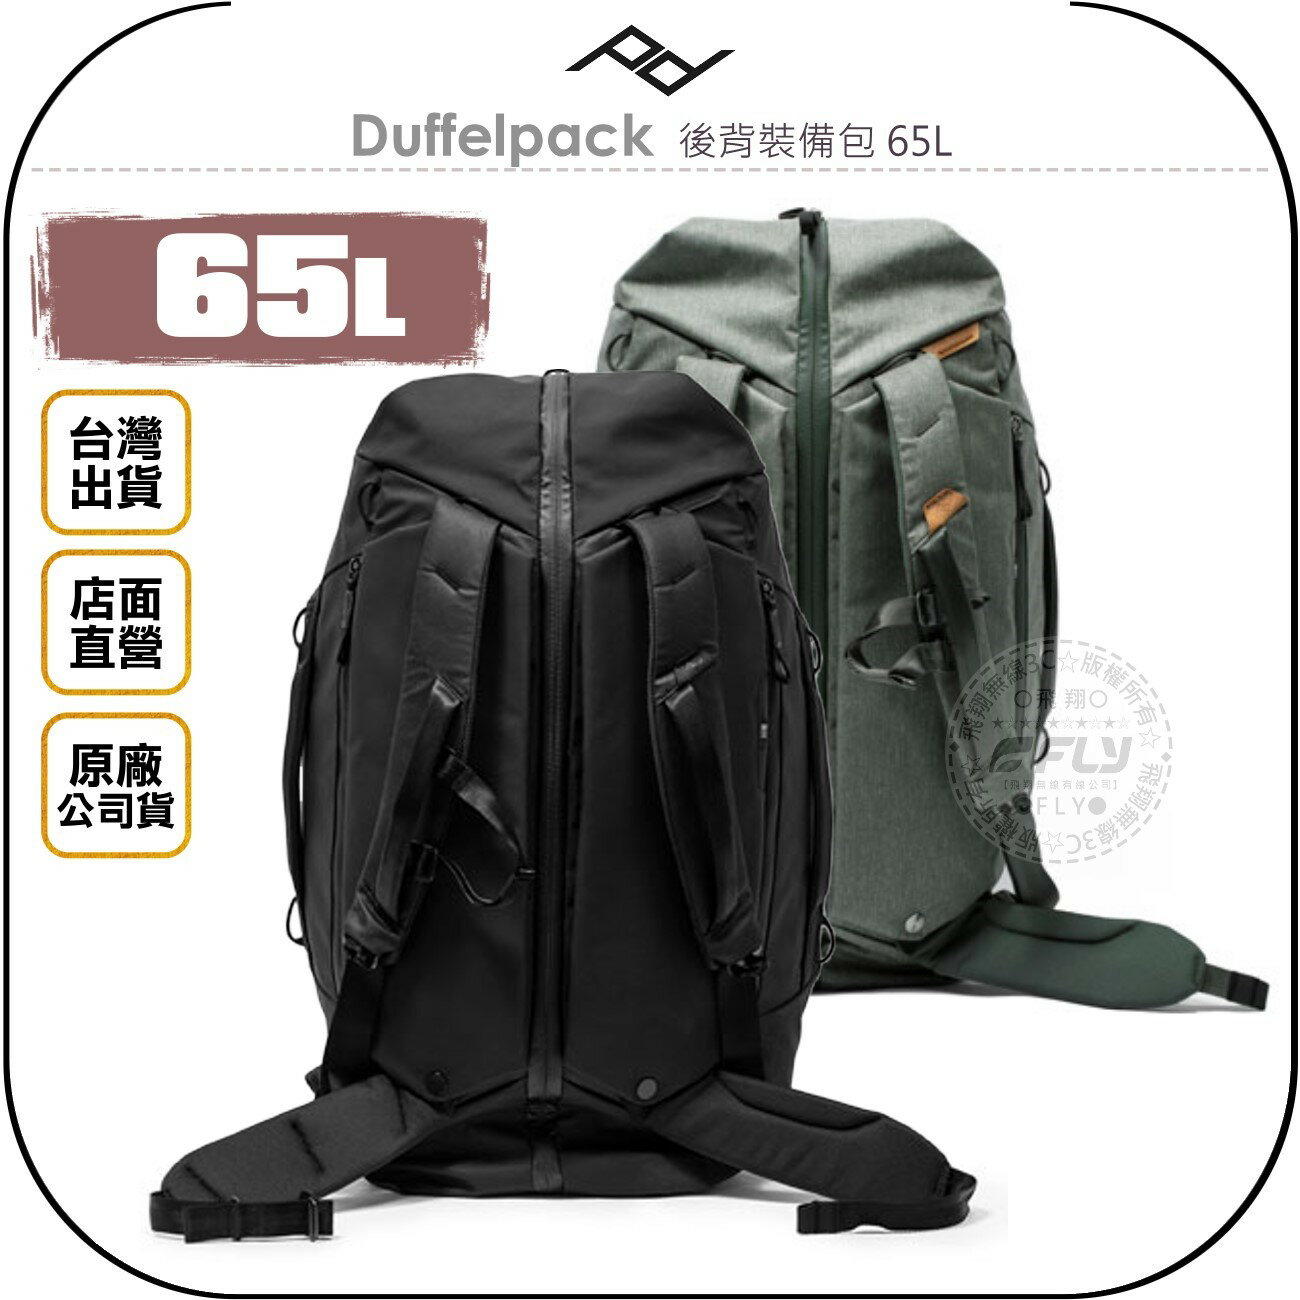 《飛翔無線3C》PEAK DESIGN Duffelpack 後背裝備包 65L◉台灣公司貨◉單眼相機包◉雙肩後背包